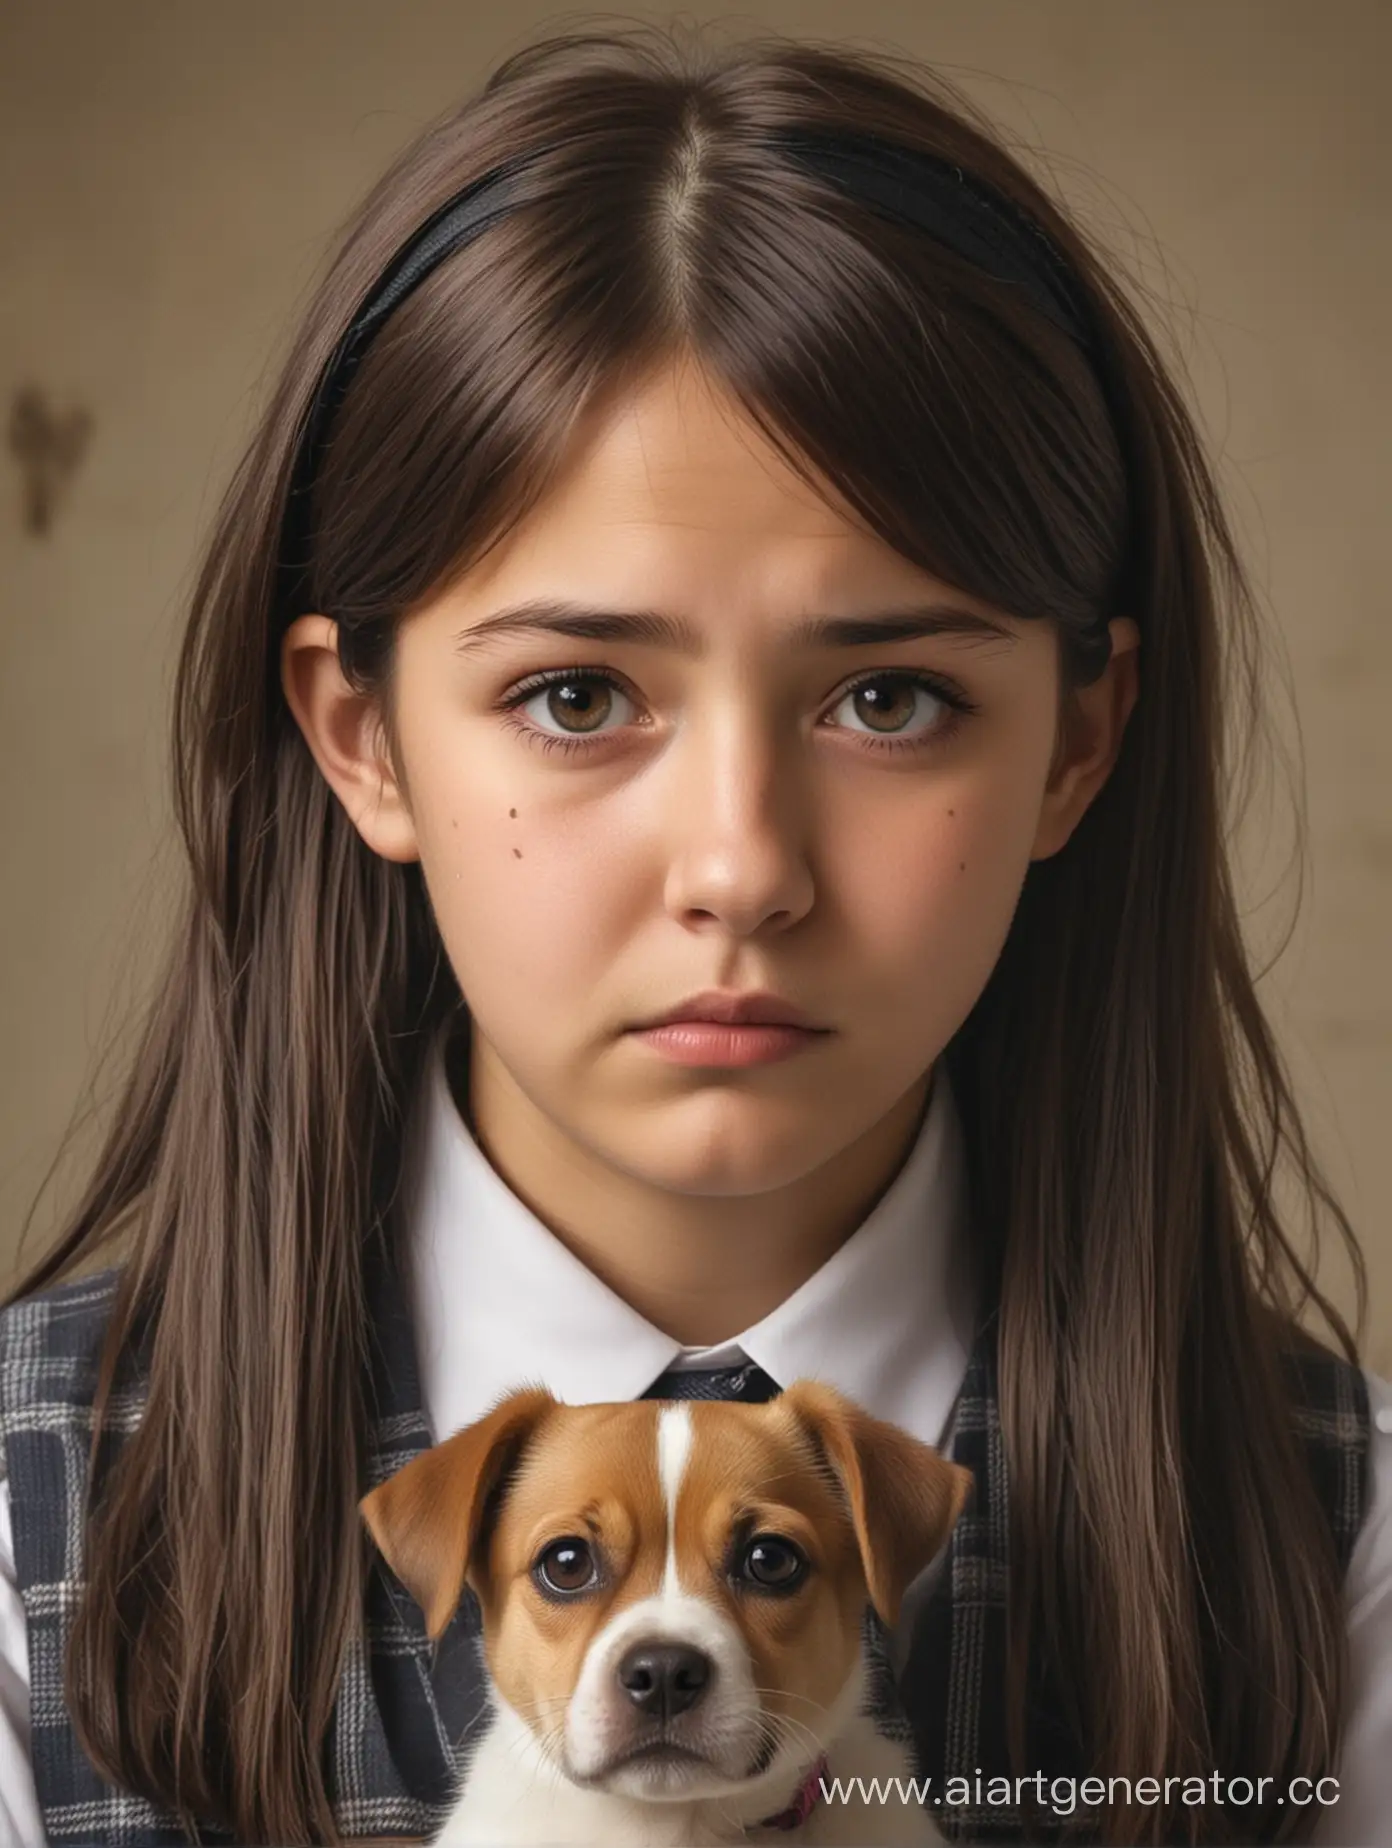 Sad-Dog-Gazing-at-Schoolgirl-with-Sympathetic-Eyes